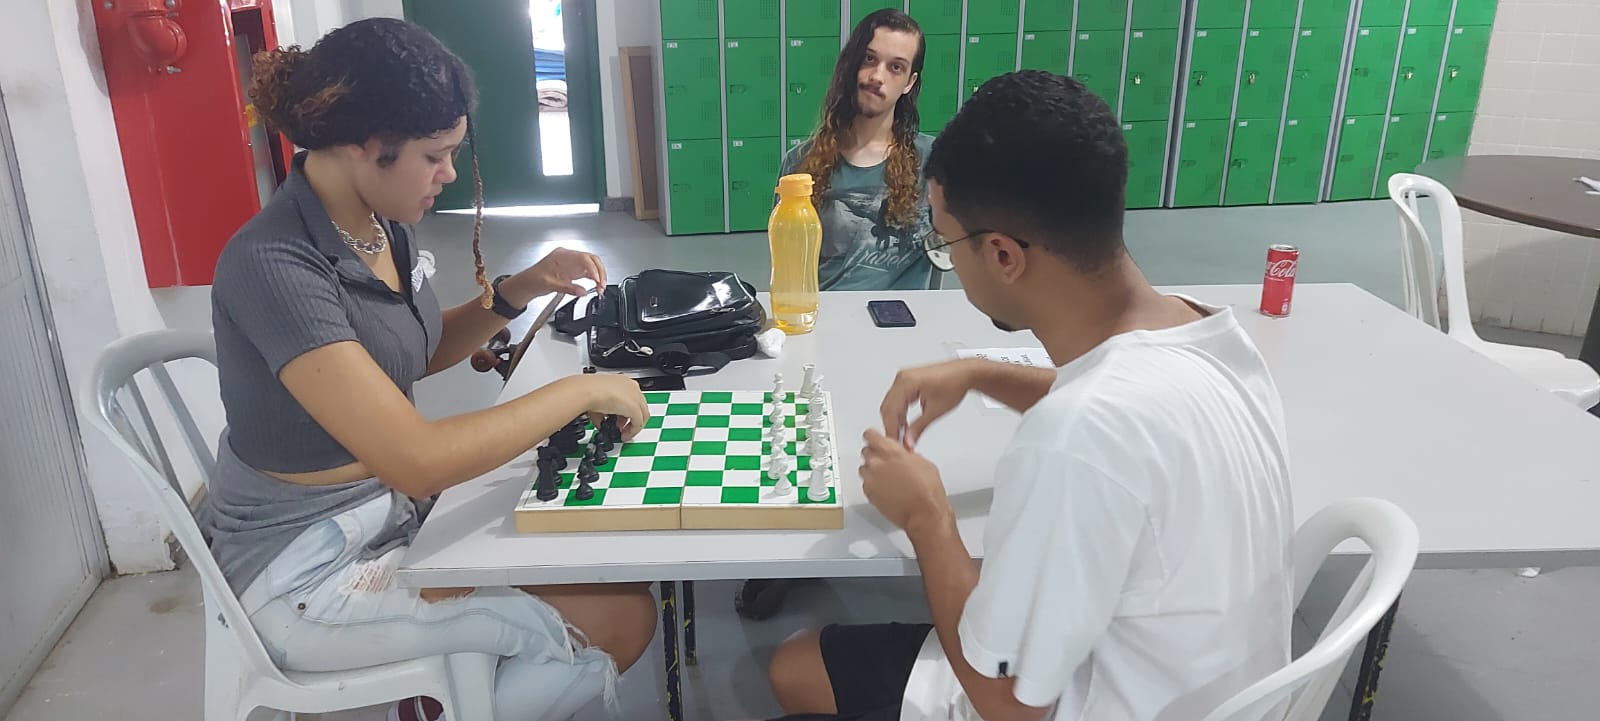 alunos sentados jogam xadrex